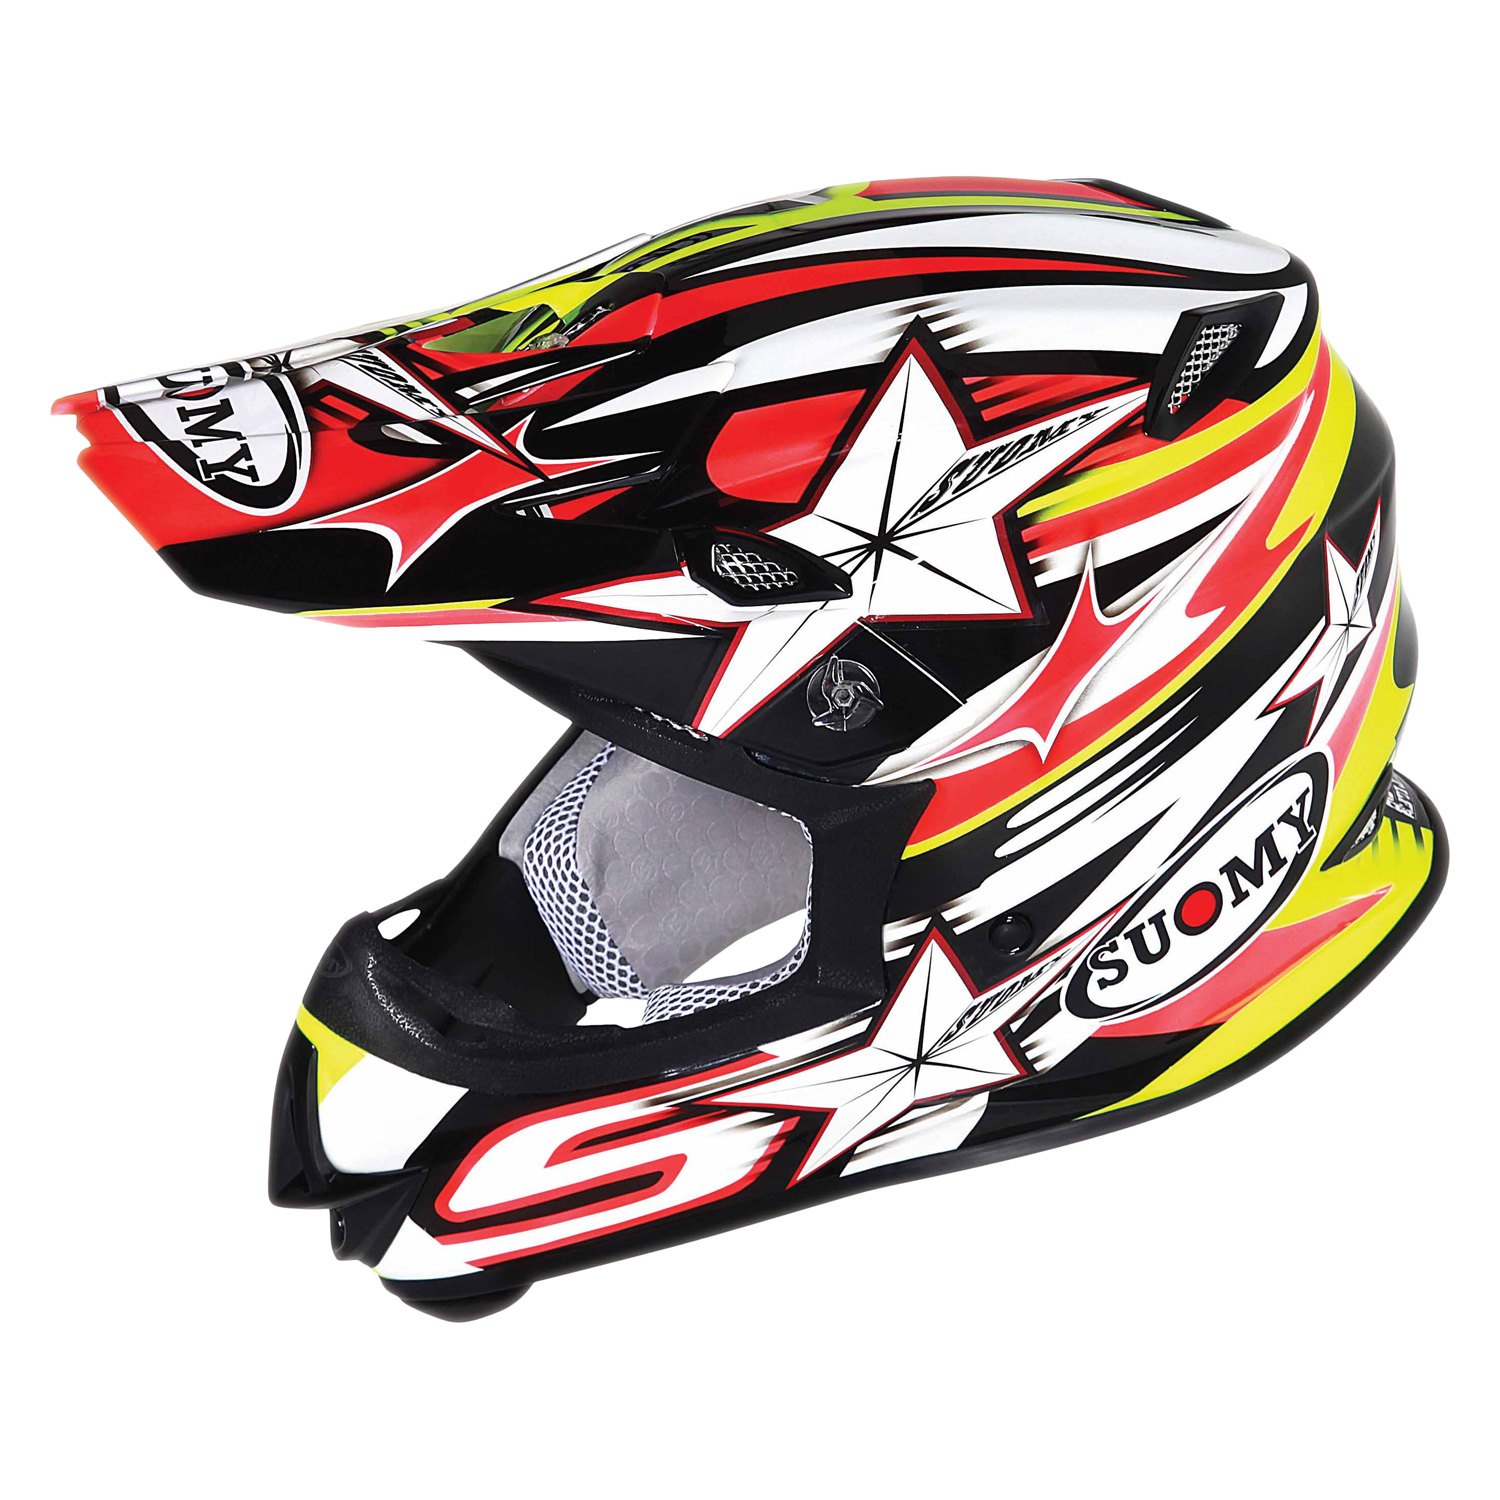 Eindeloos sterk prins Suomy® - MX Jump Bullet Off-Road Helmet - MOTORCYCLEiD.com